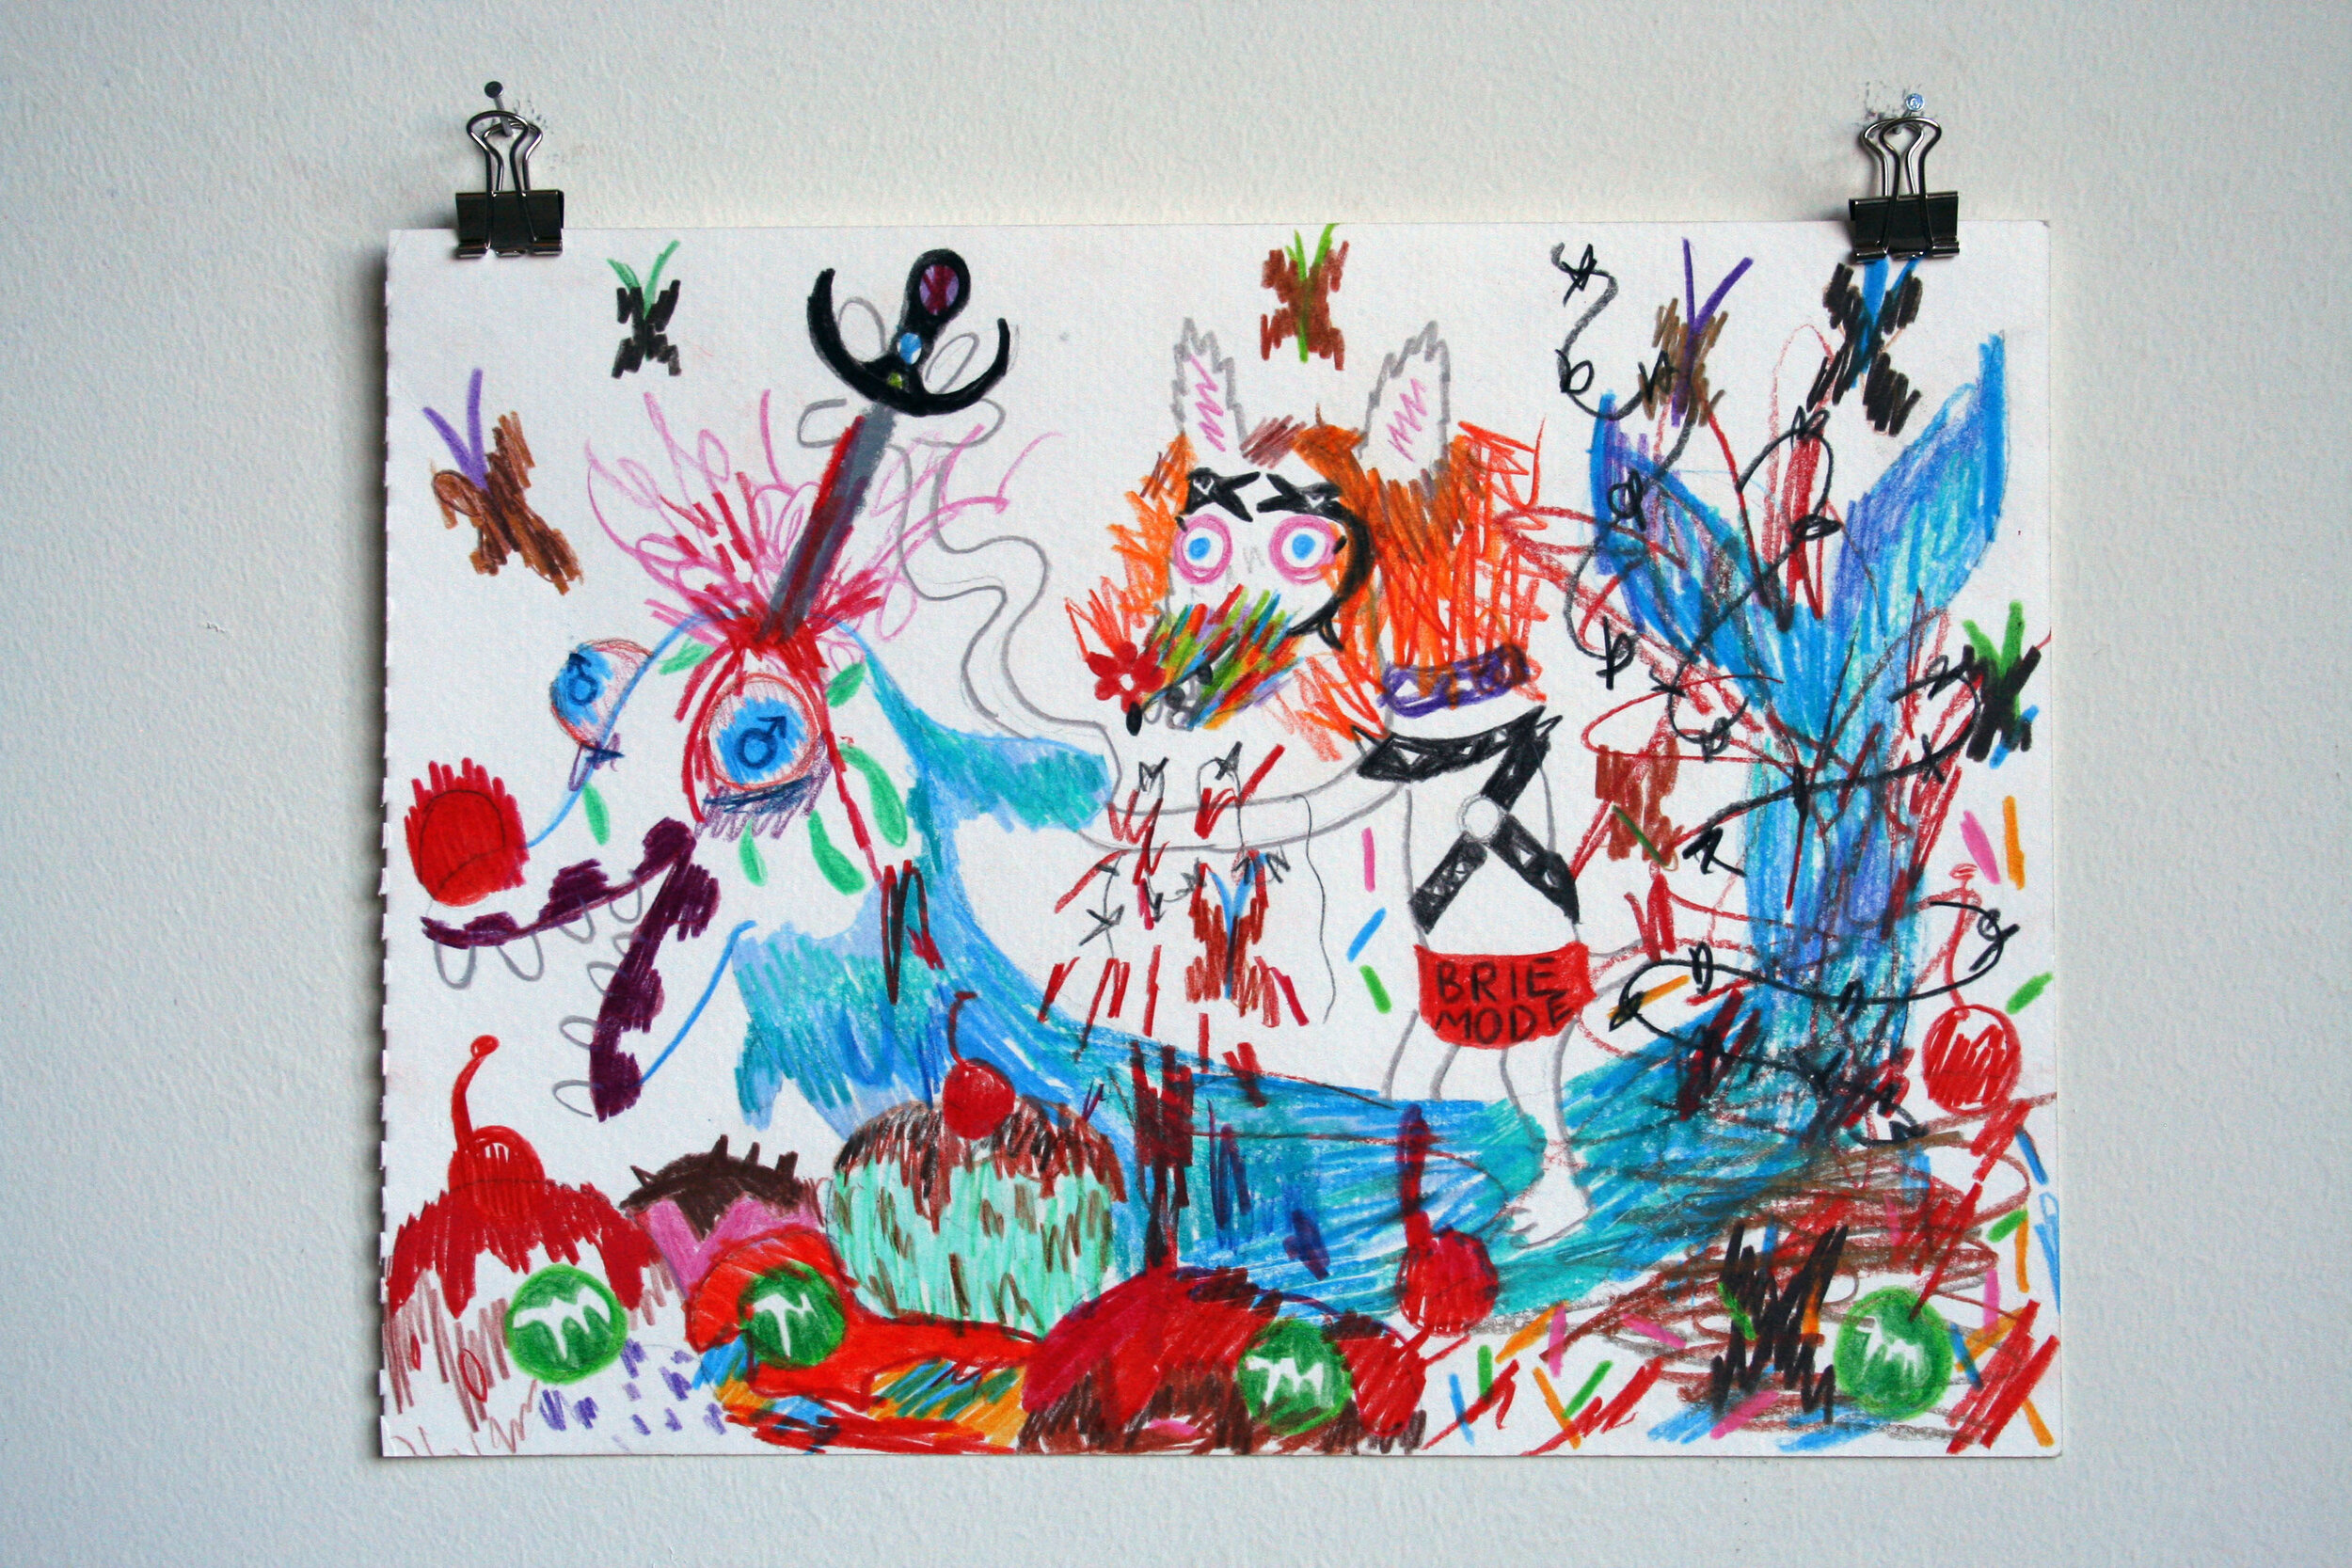   Fantasy Love , 2015  9 x 12 inches (22.86 x 30.48 cm.)  Colored pencil on paper 